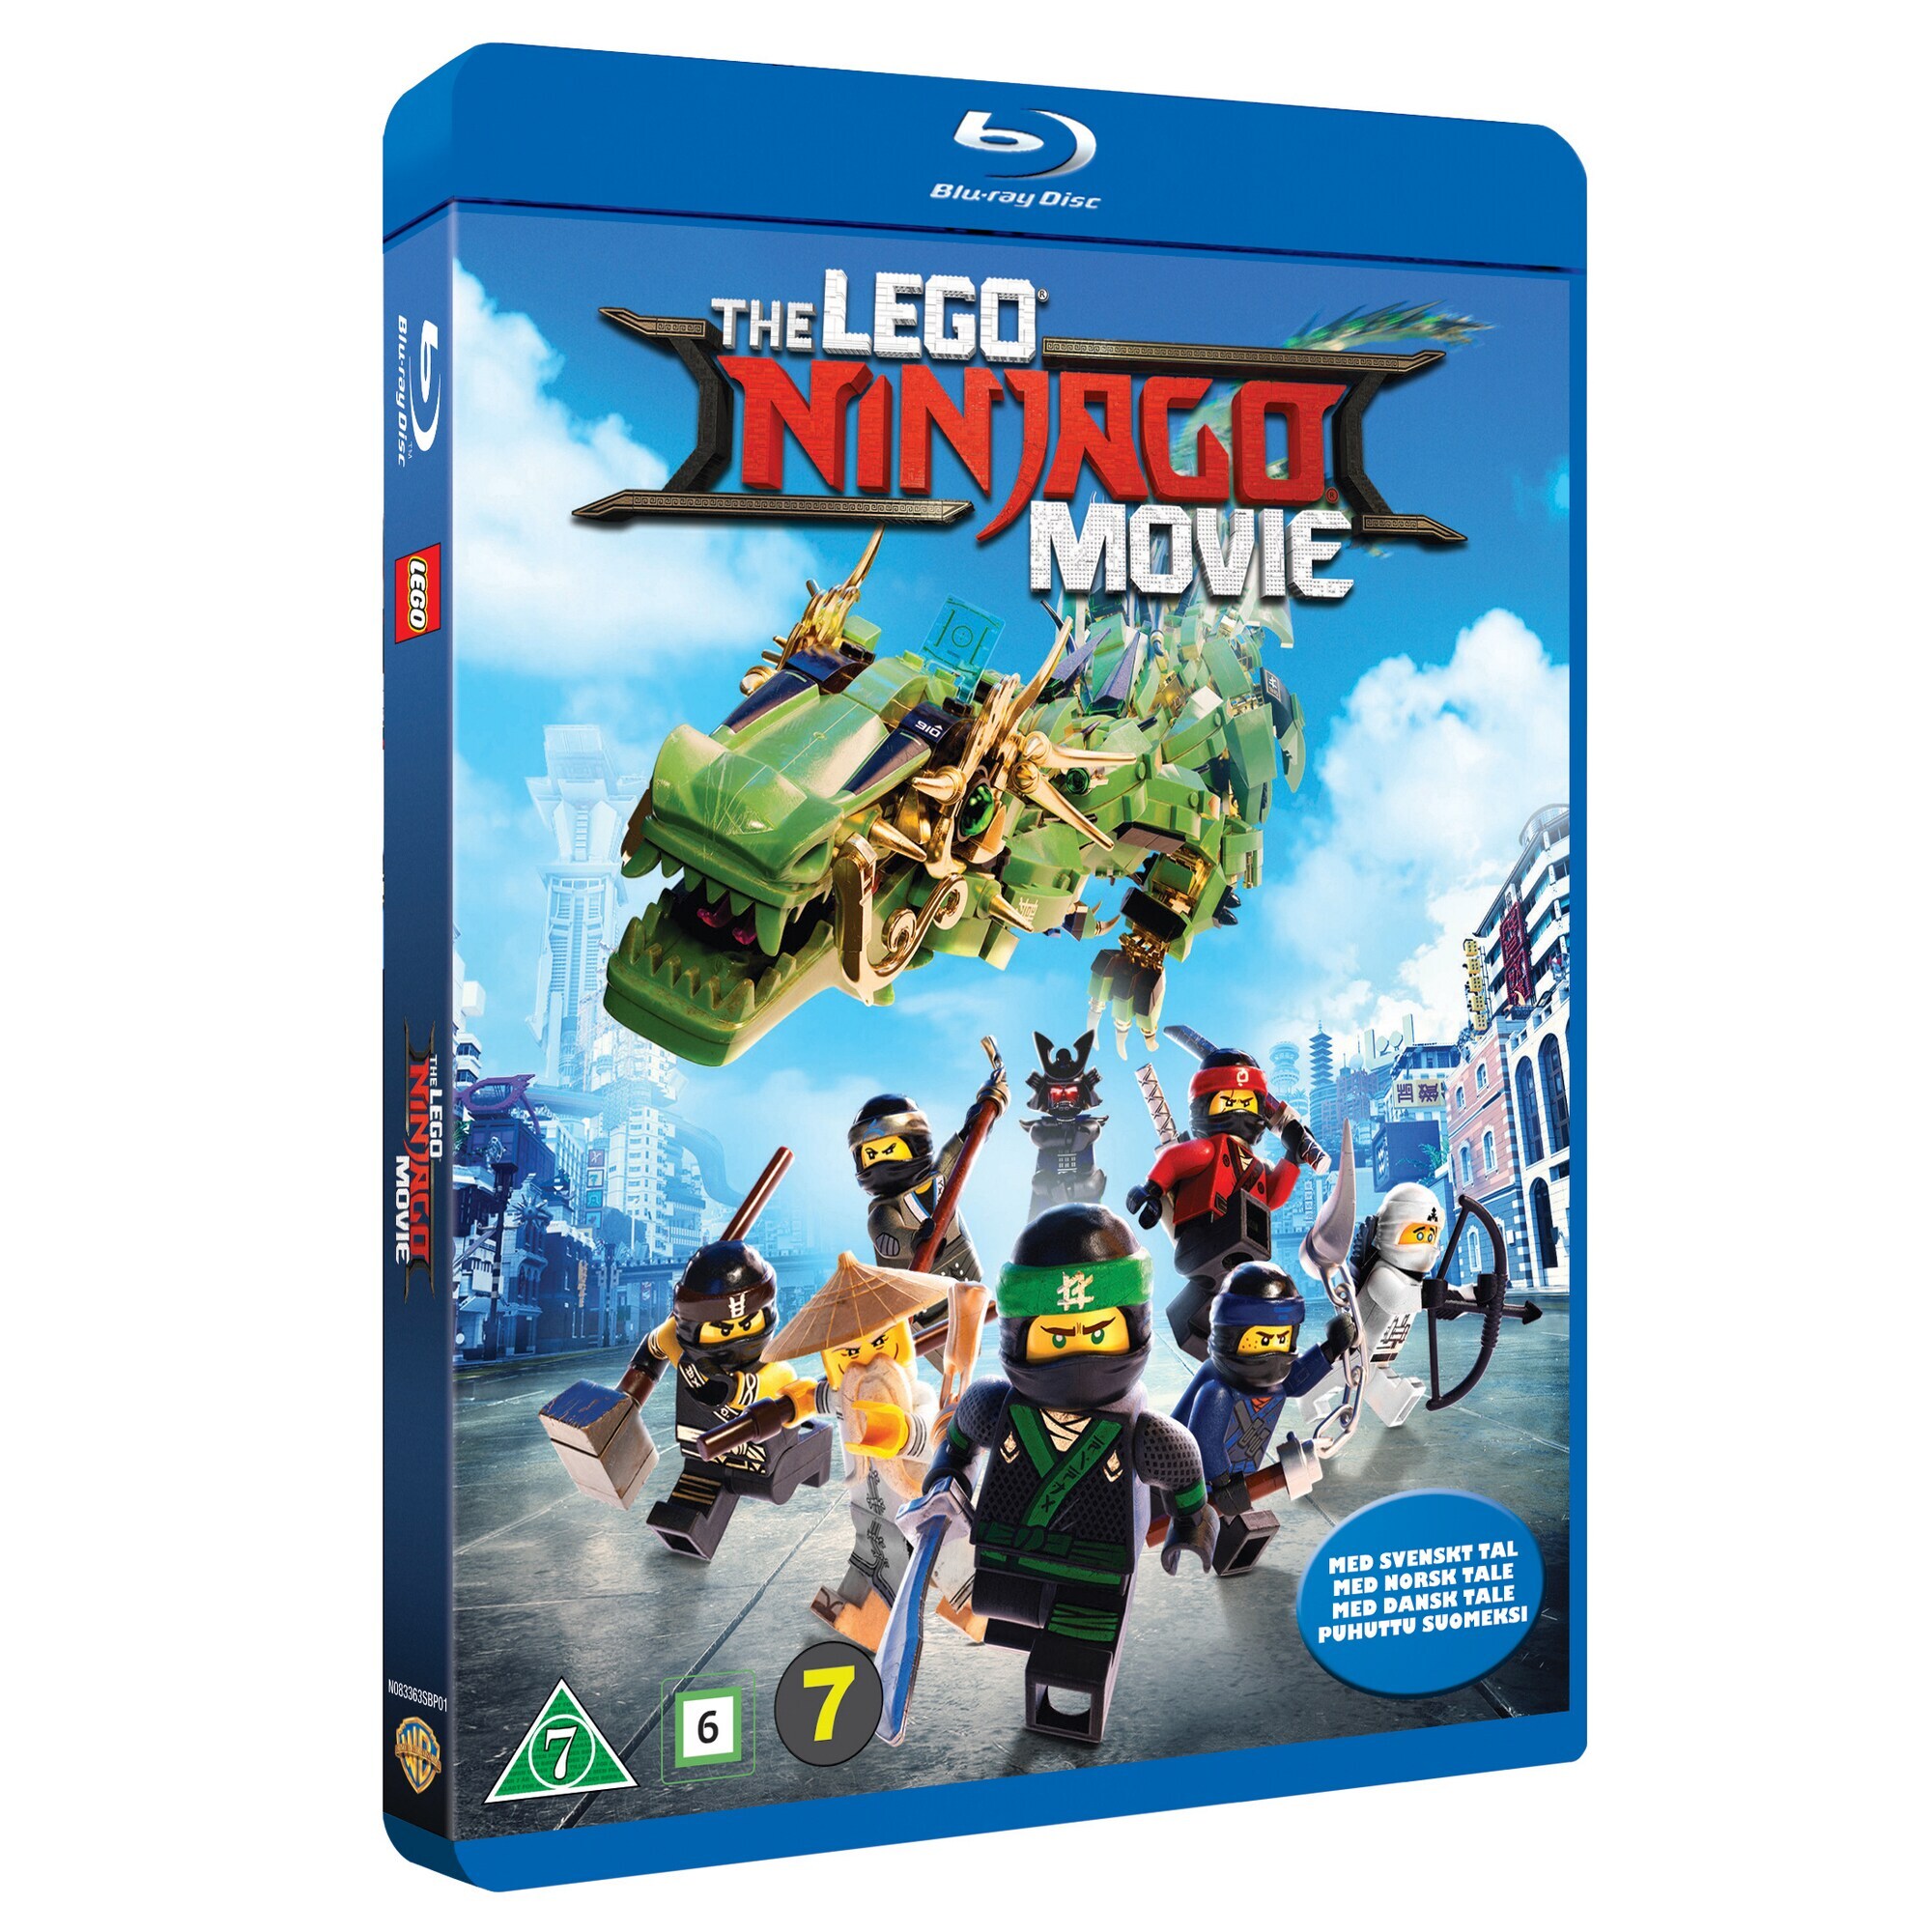 LEGO Ninjago elokuva (Blu-ray) - Gigantti verkkokauppa